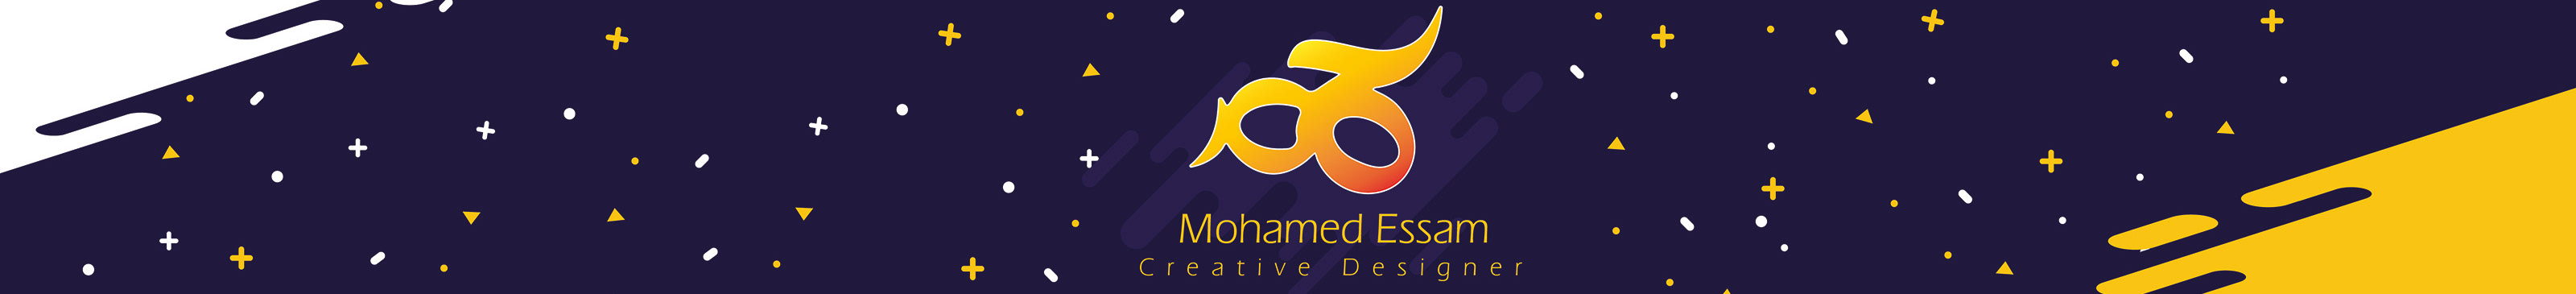 Mohamed Essam のプロファイルバナー